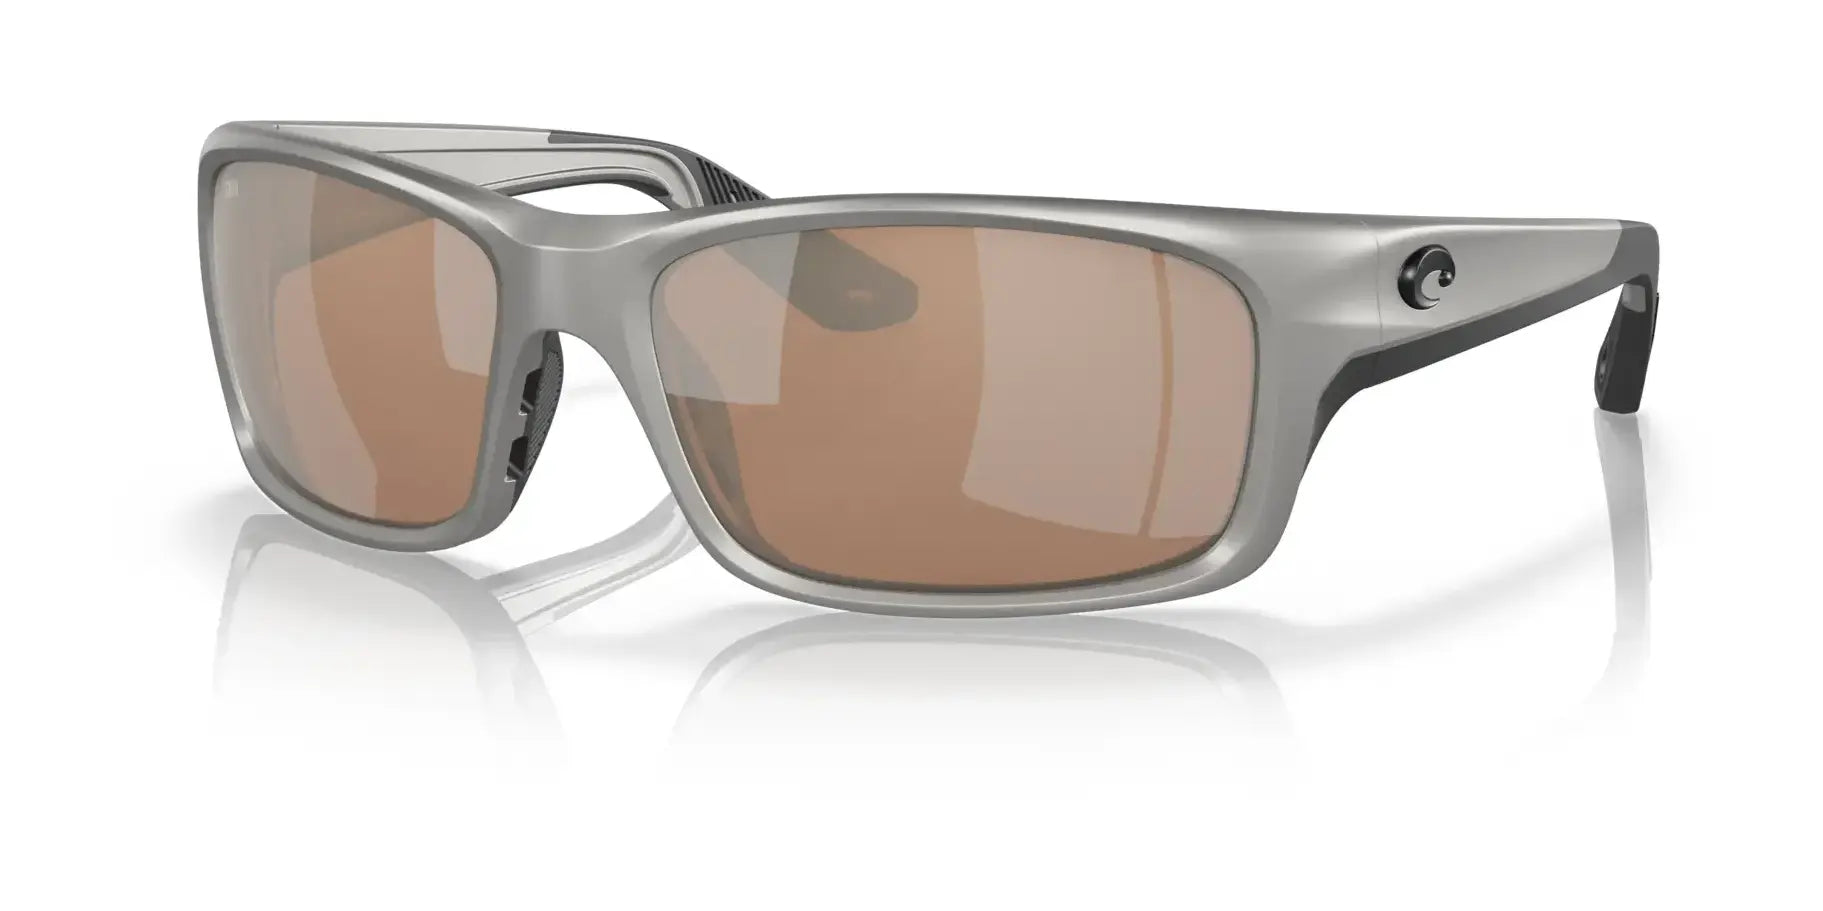 Costa JOSE PRO 6S9106 Sunglasses Metallic Silver / Copper Silver Mirror